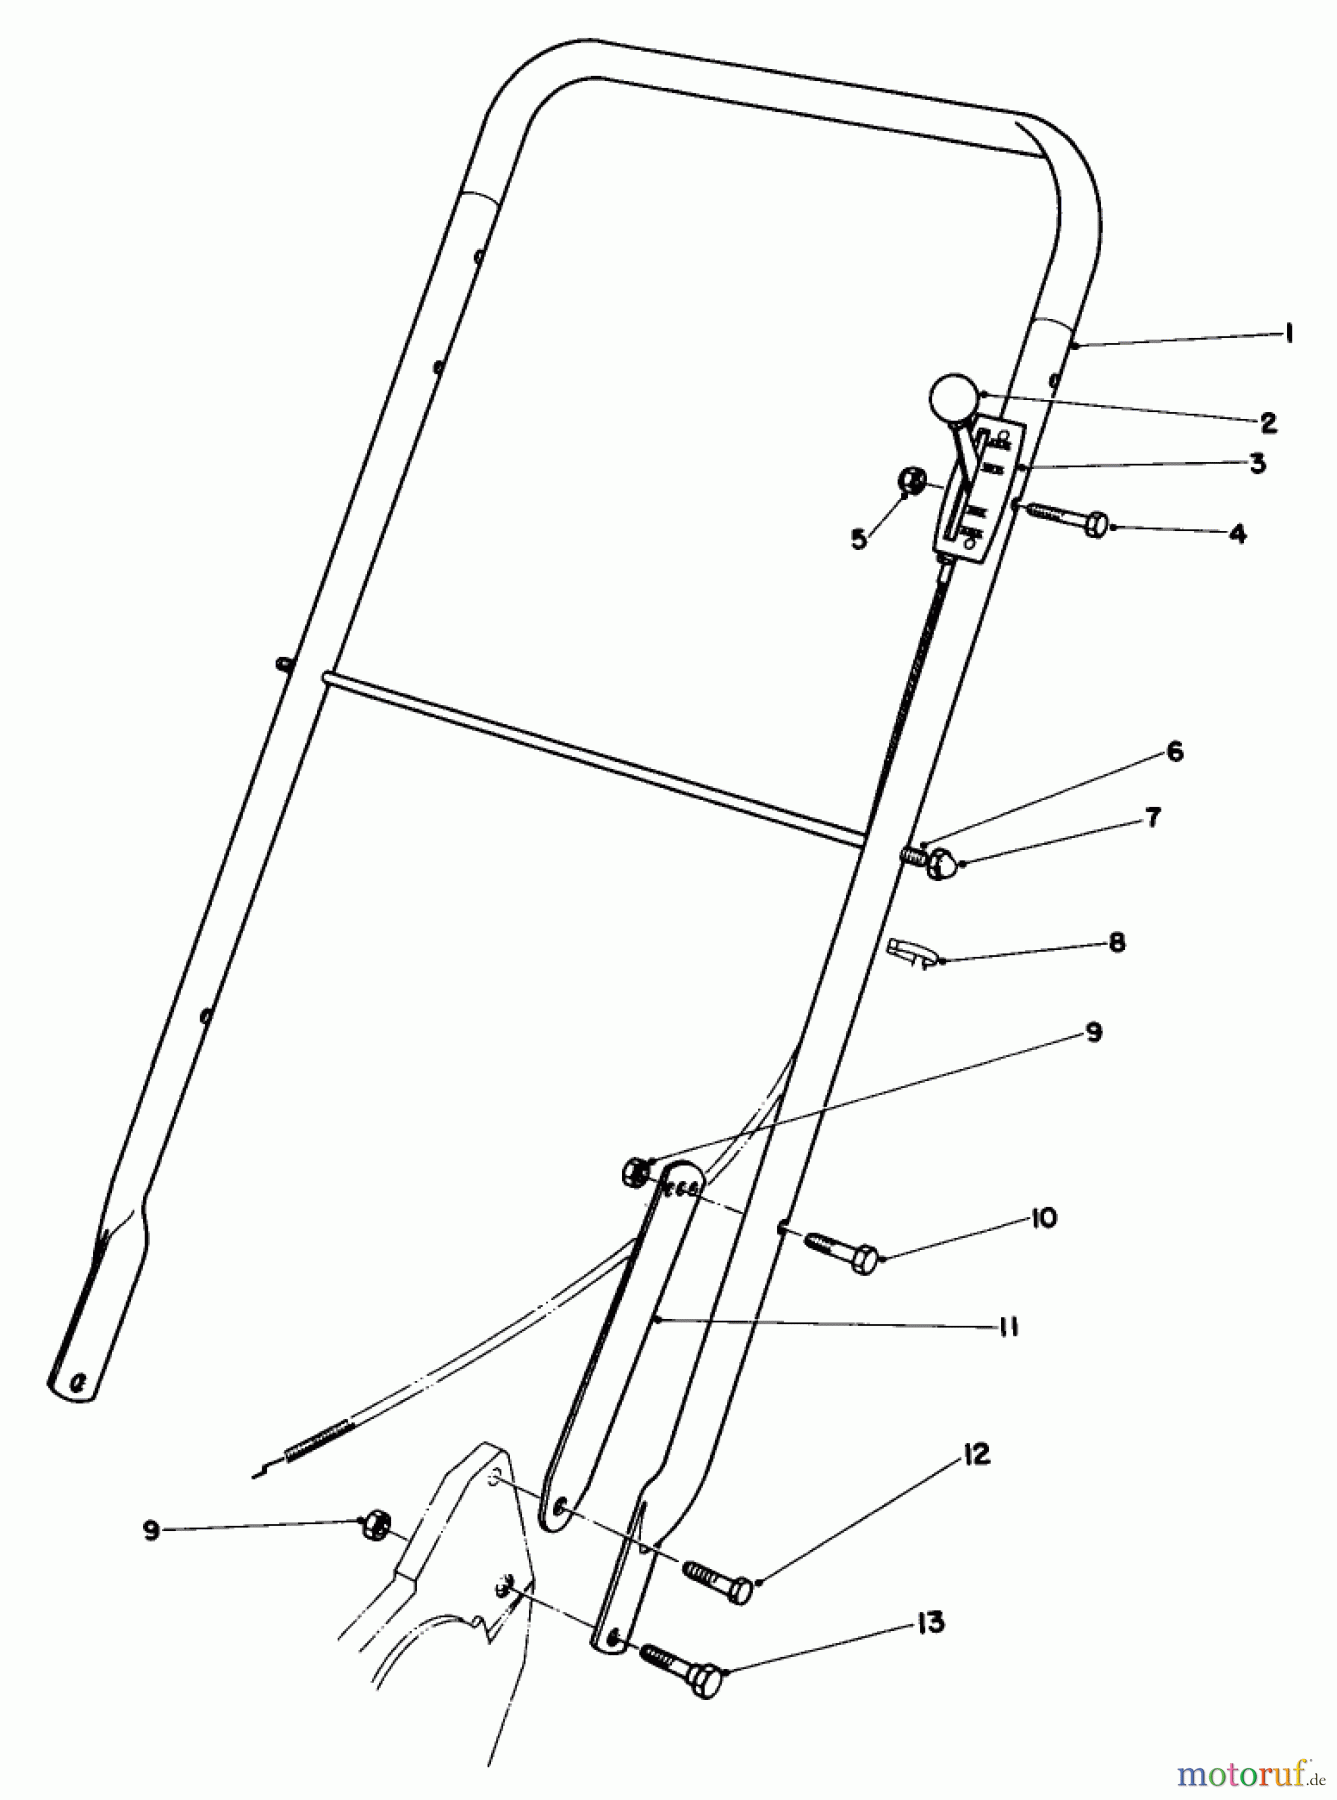  Toro Neu Mowers, Walk-Behind Seite 2 22030 - Toro Lawnmower, 1985 (5000001-5999999) HANDLE ASSEMBLY (MODEL 22030)